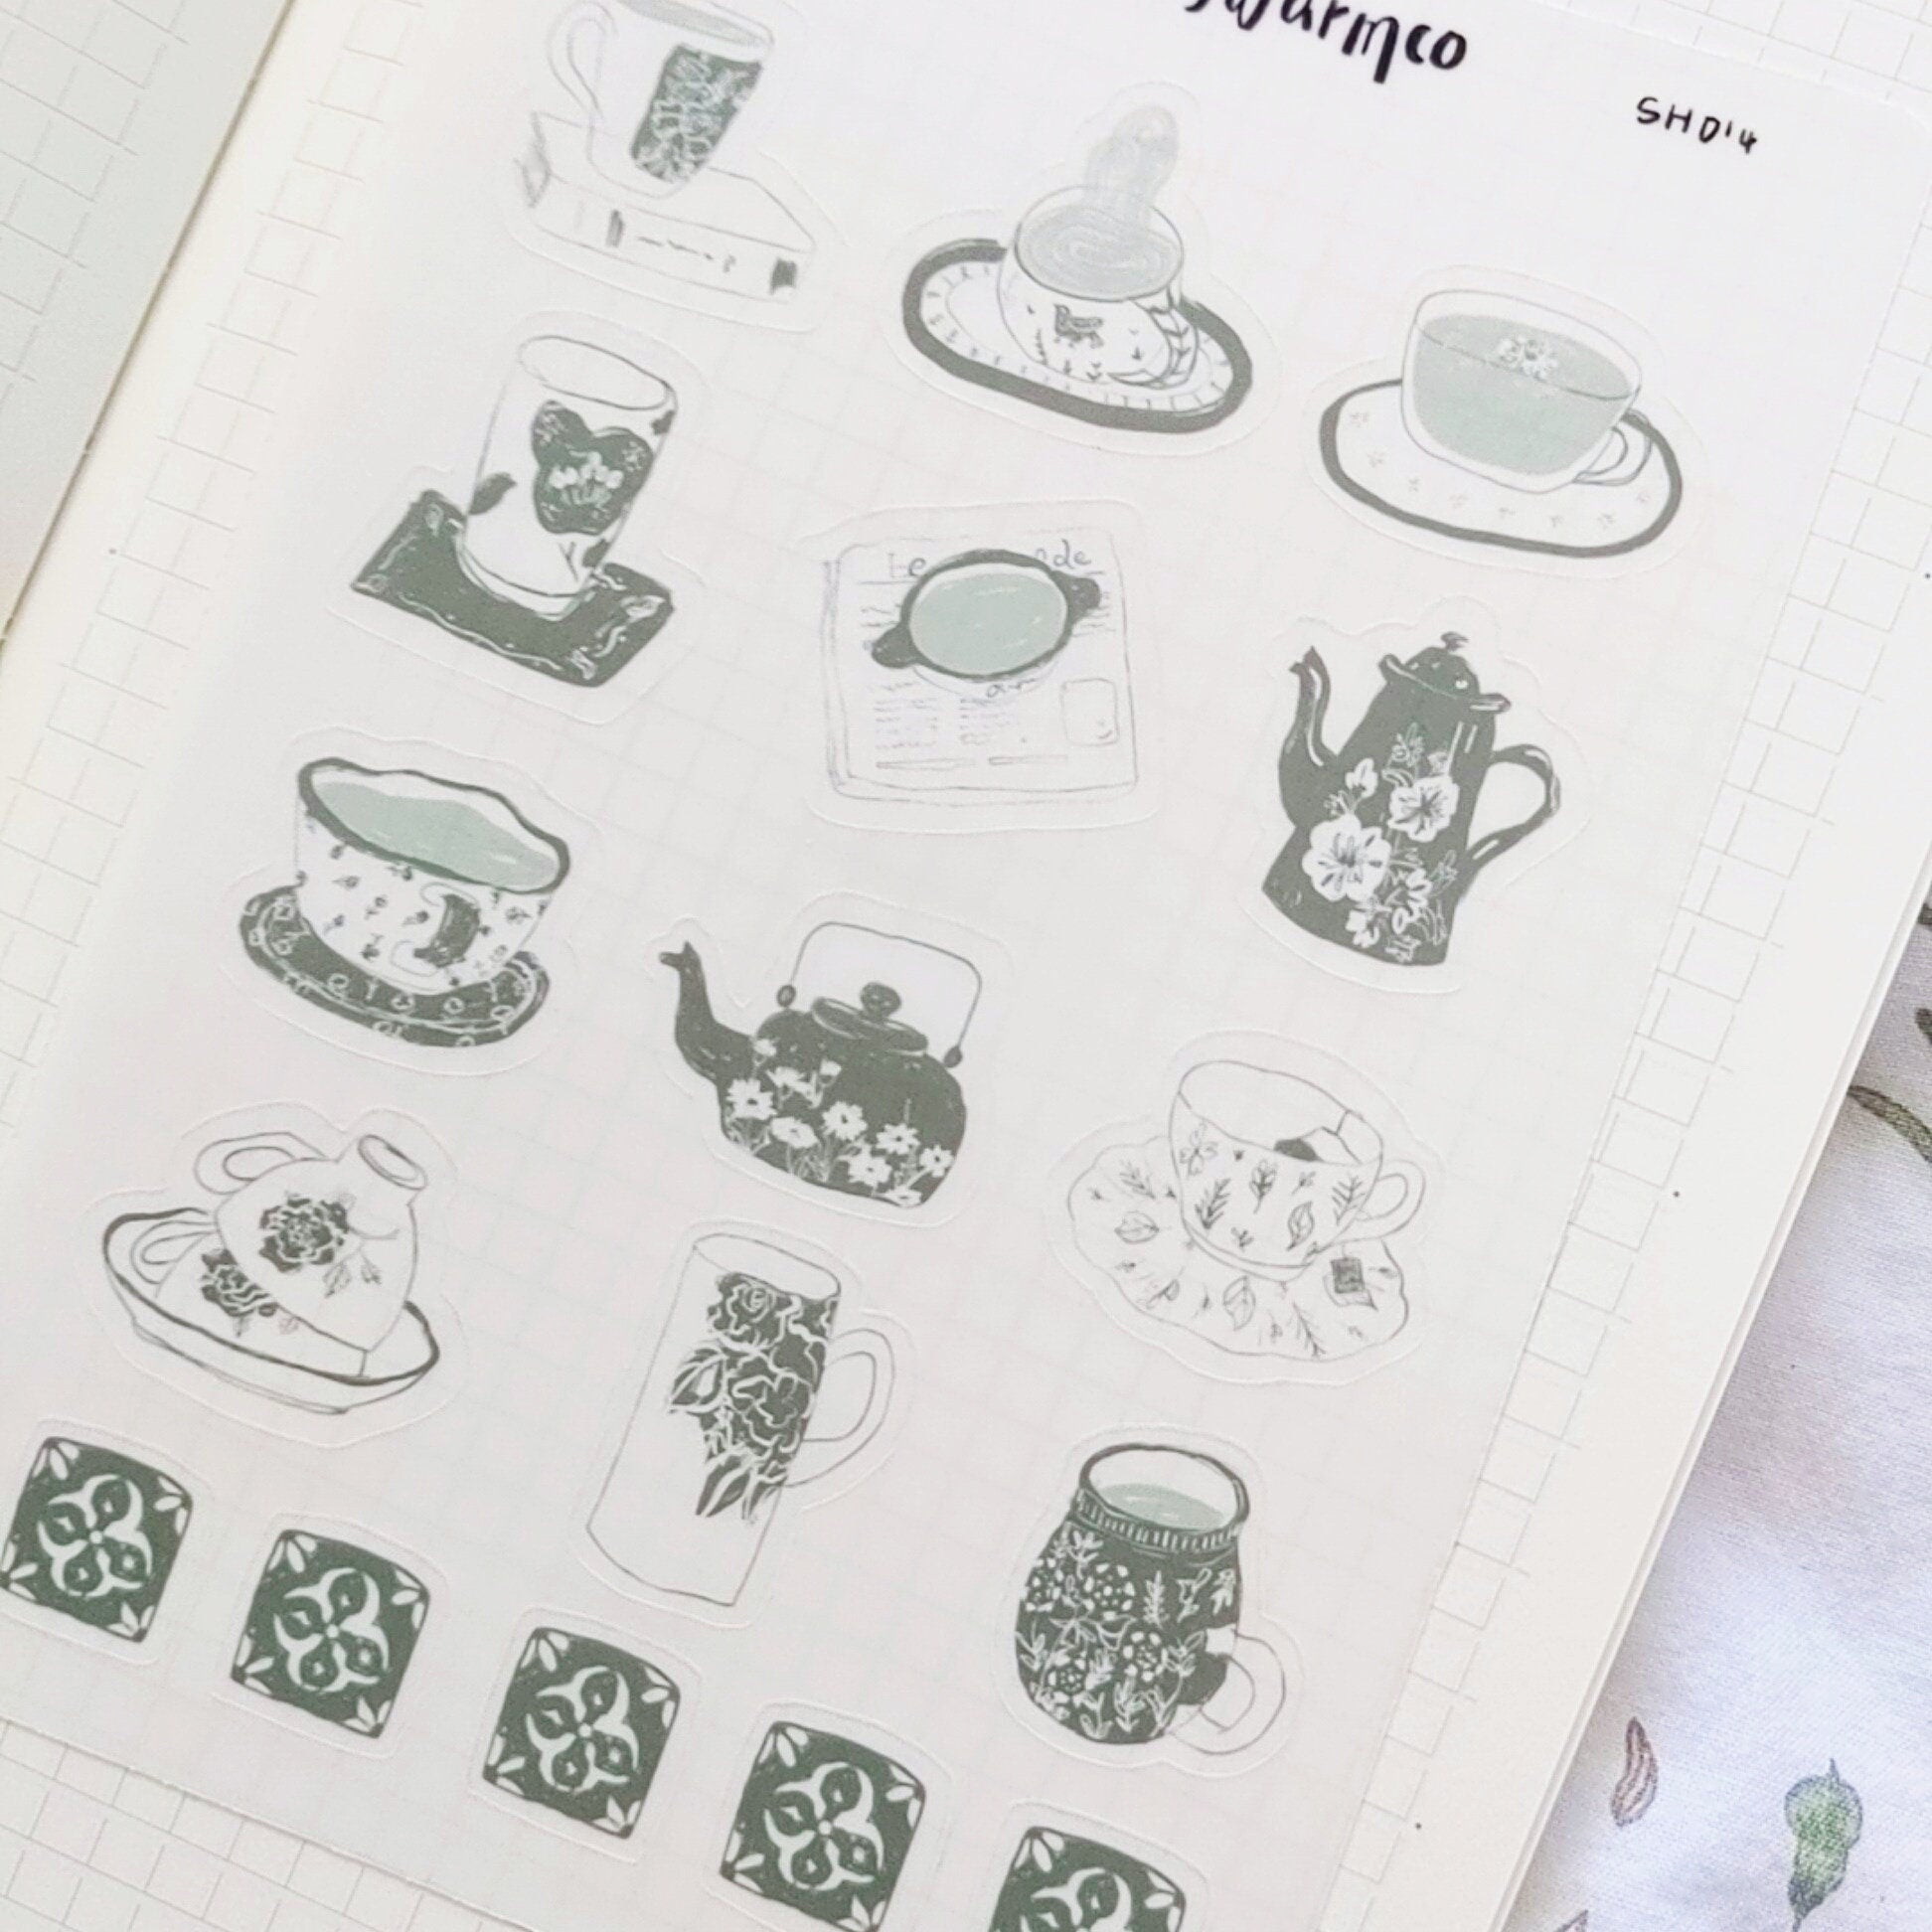 sticker sheet | tea time | matcha green tea cups | cozy | tea lover